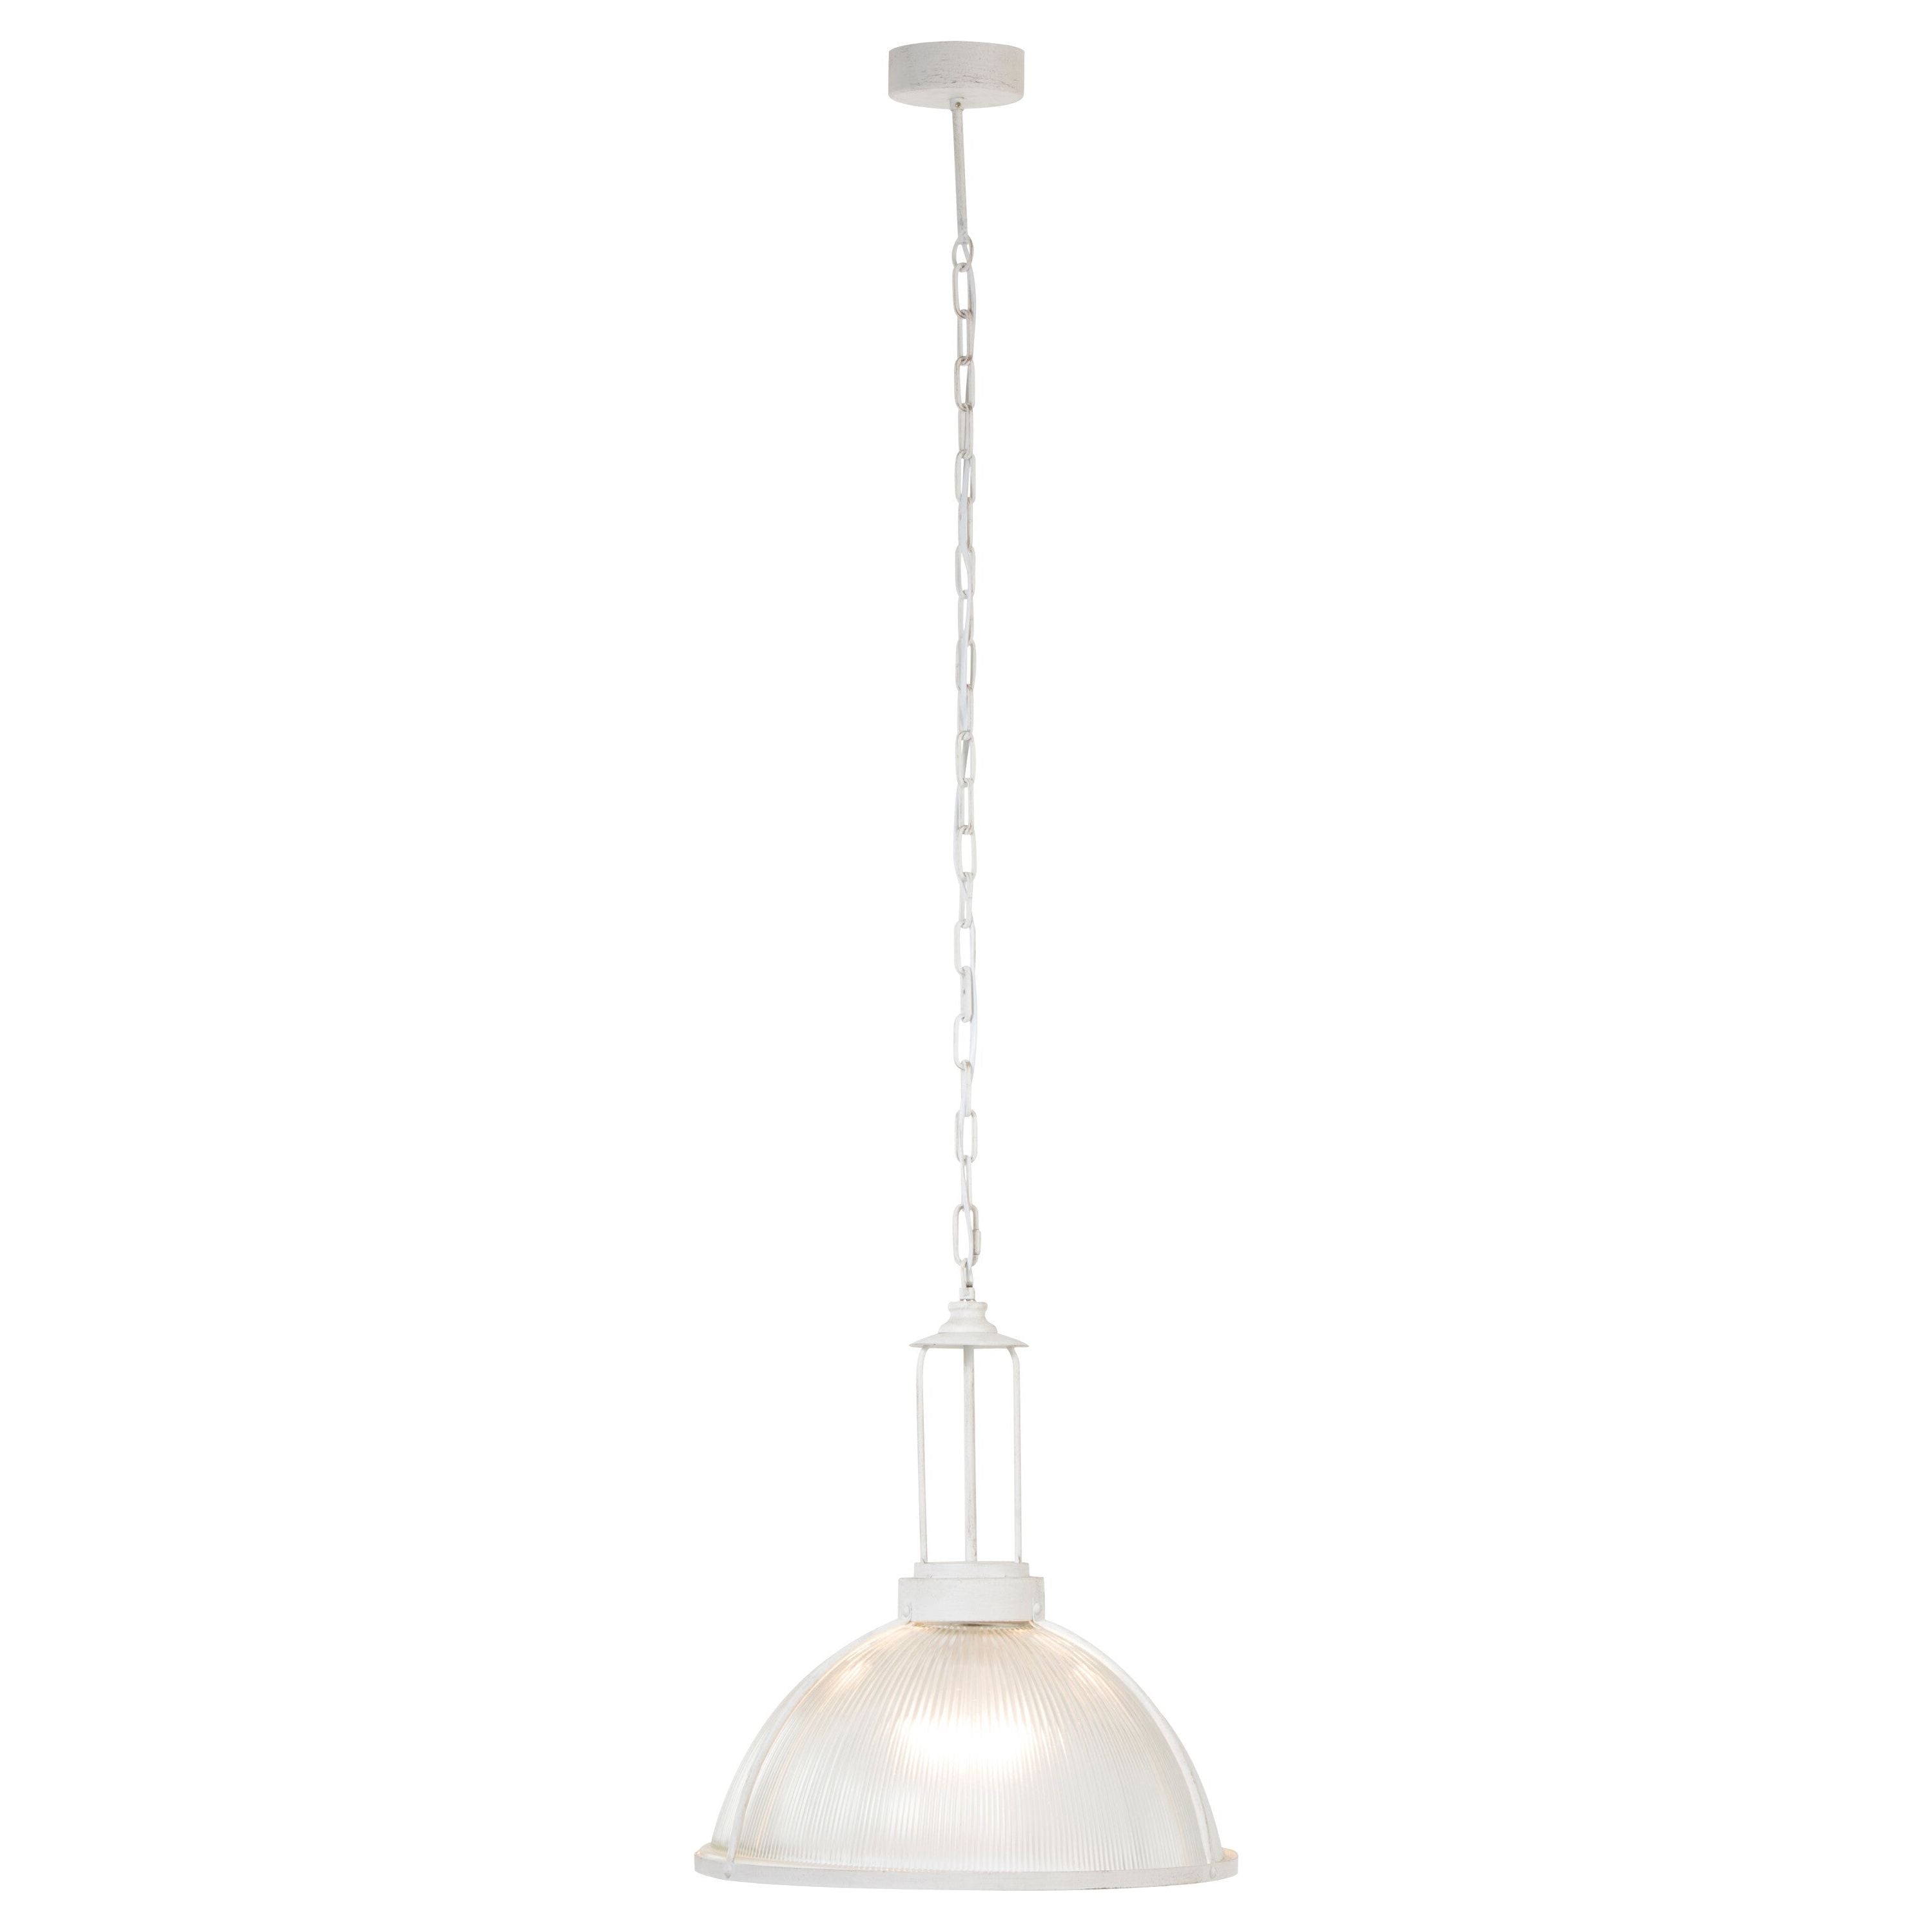 Hanging lamp Round Glass/metal White